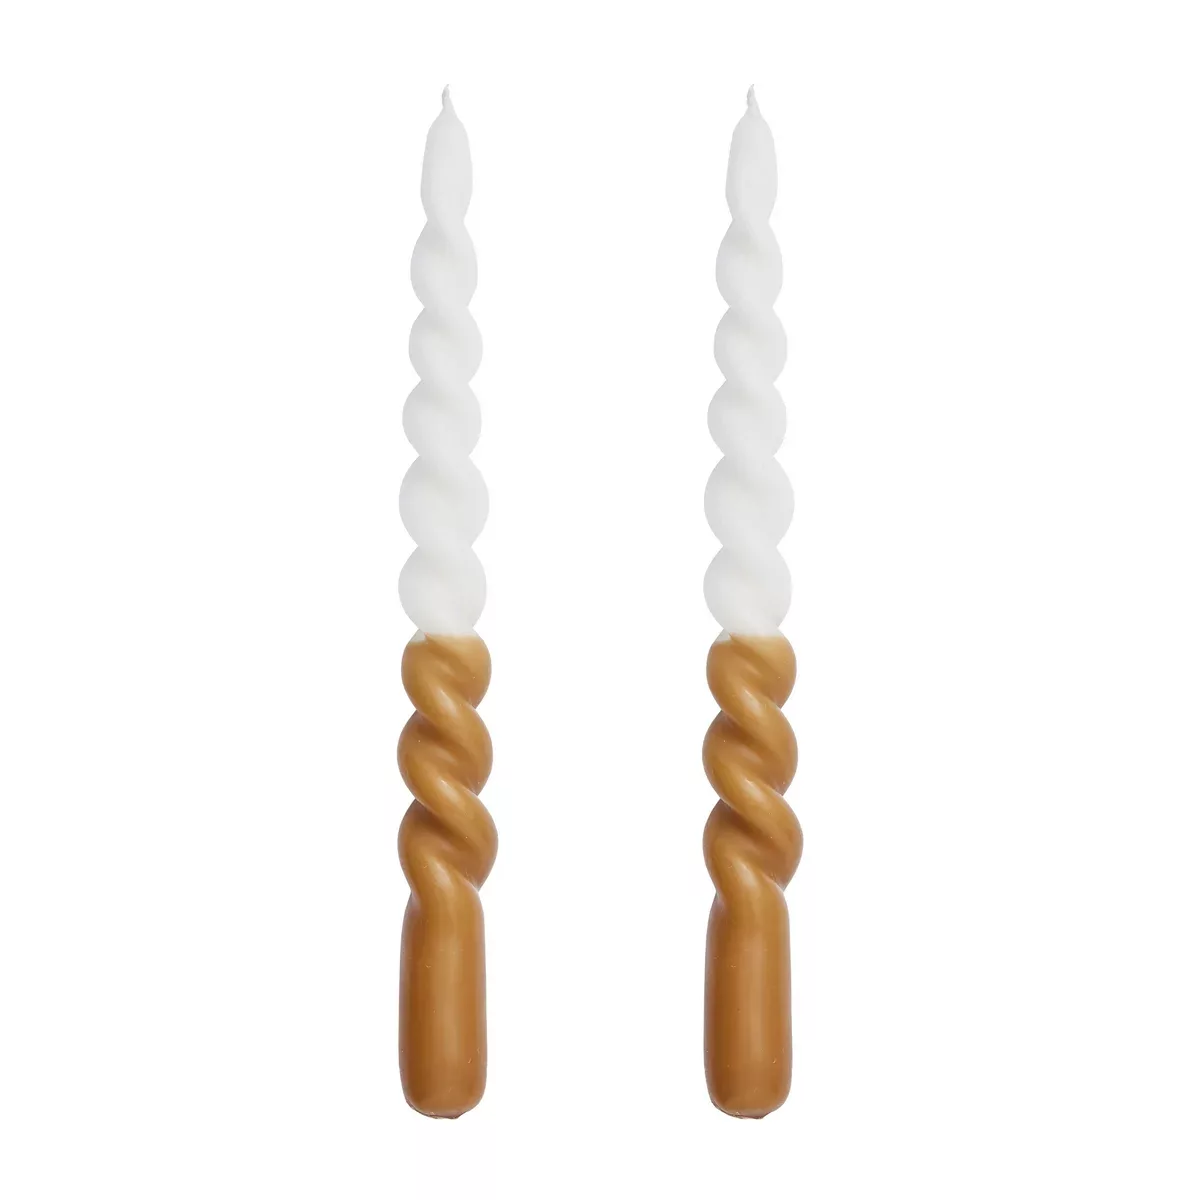 Twisted gedrehte Kerze zweifarbig 25cm 2er Pack Golden brown-white günstig online kaufen